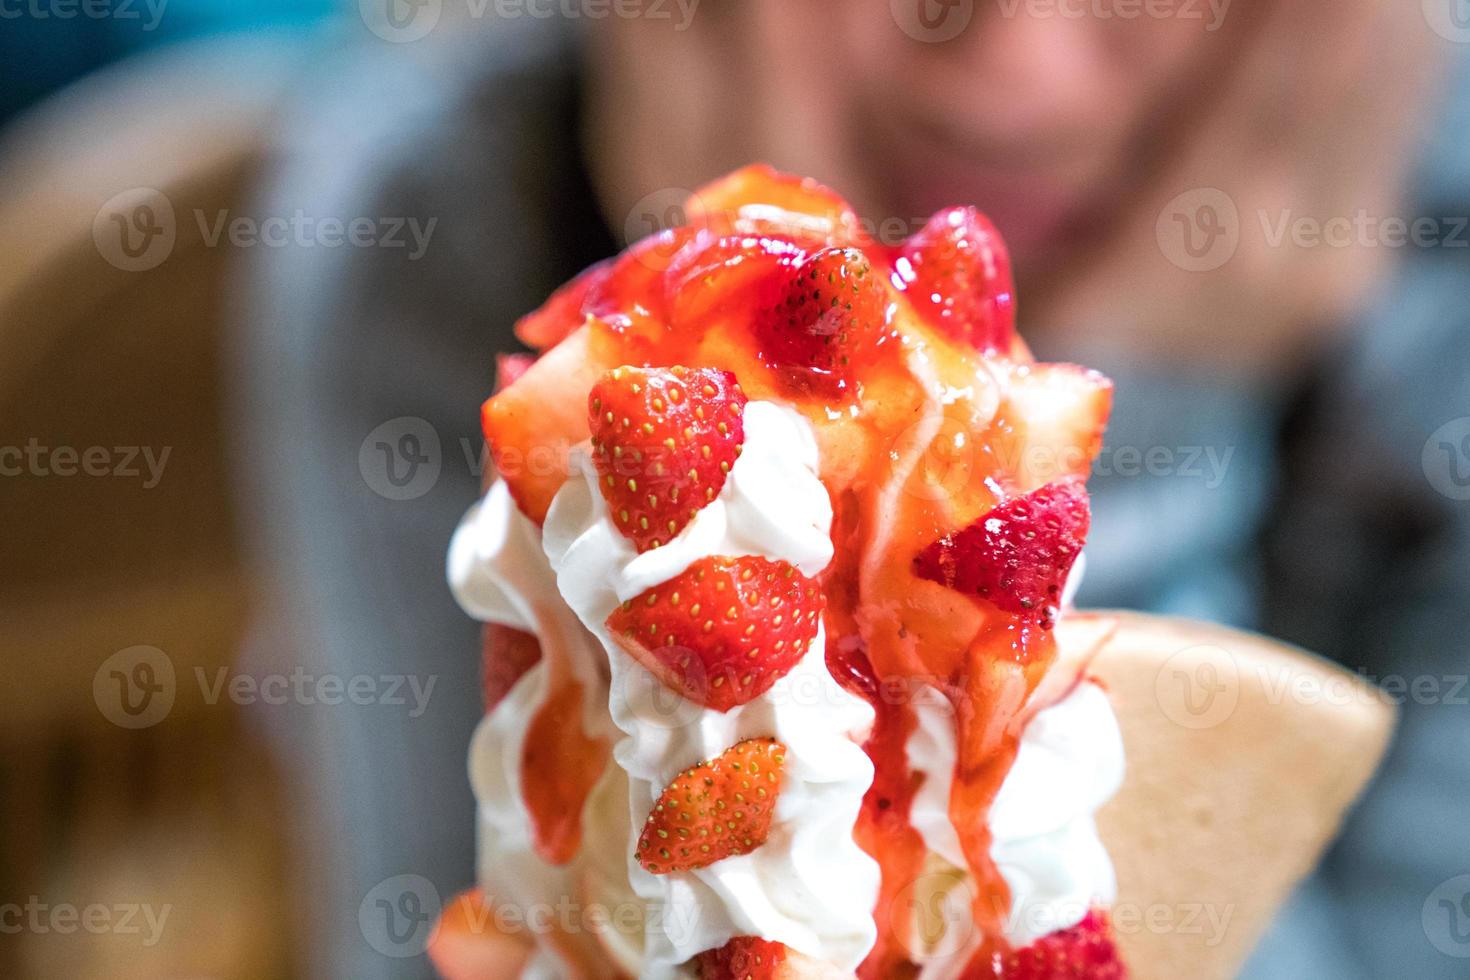 torre de helado de fresa con crema batida y salsa de fresa. foto